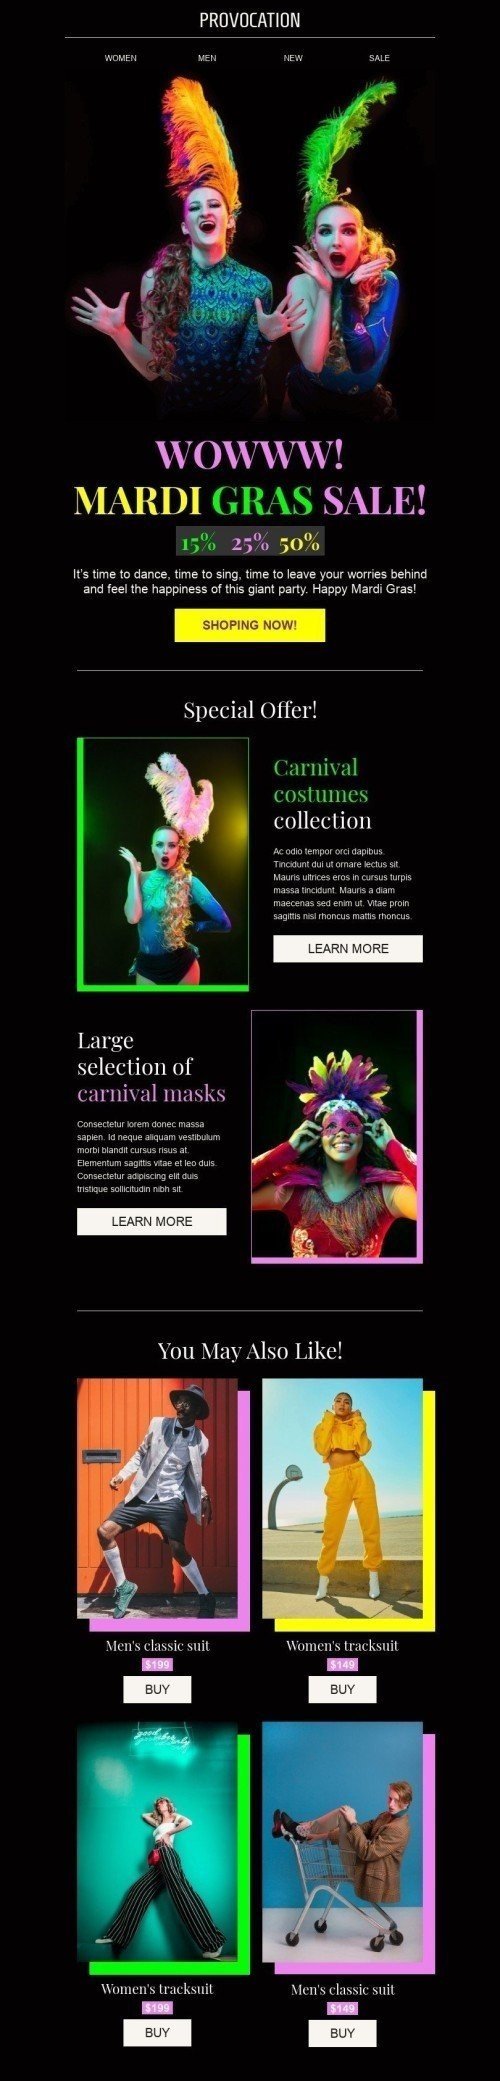 Modelo de E-mail de «Promoção Mardi Gras» de Carnaval para a indústria de Moda Visualização de desktop